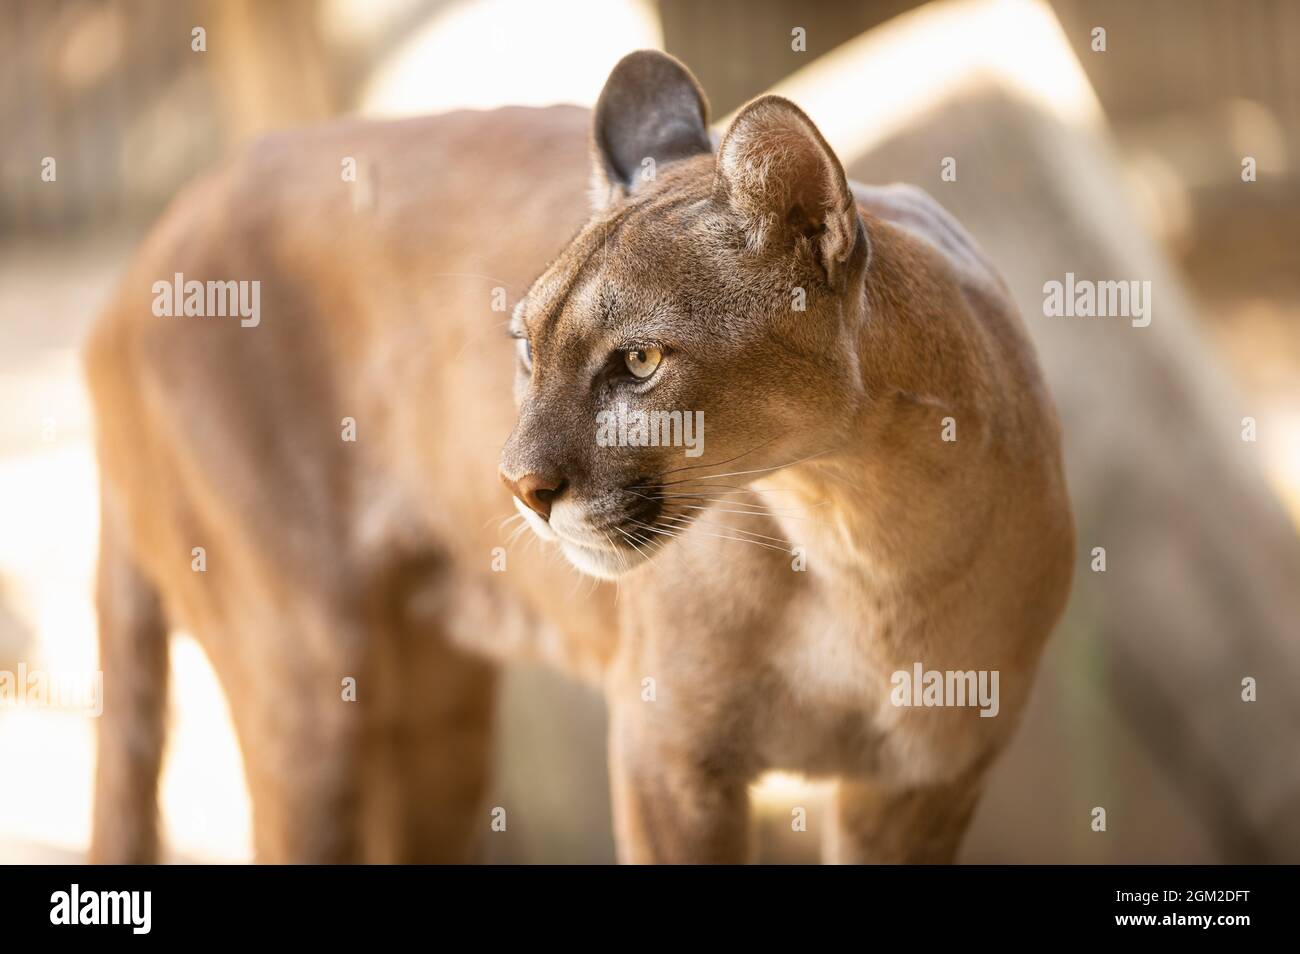 Porträt eines Puma, puma oder Berglöwen in einem spanischen Zoo. Spanien  Stockfotografie - Alamy